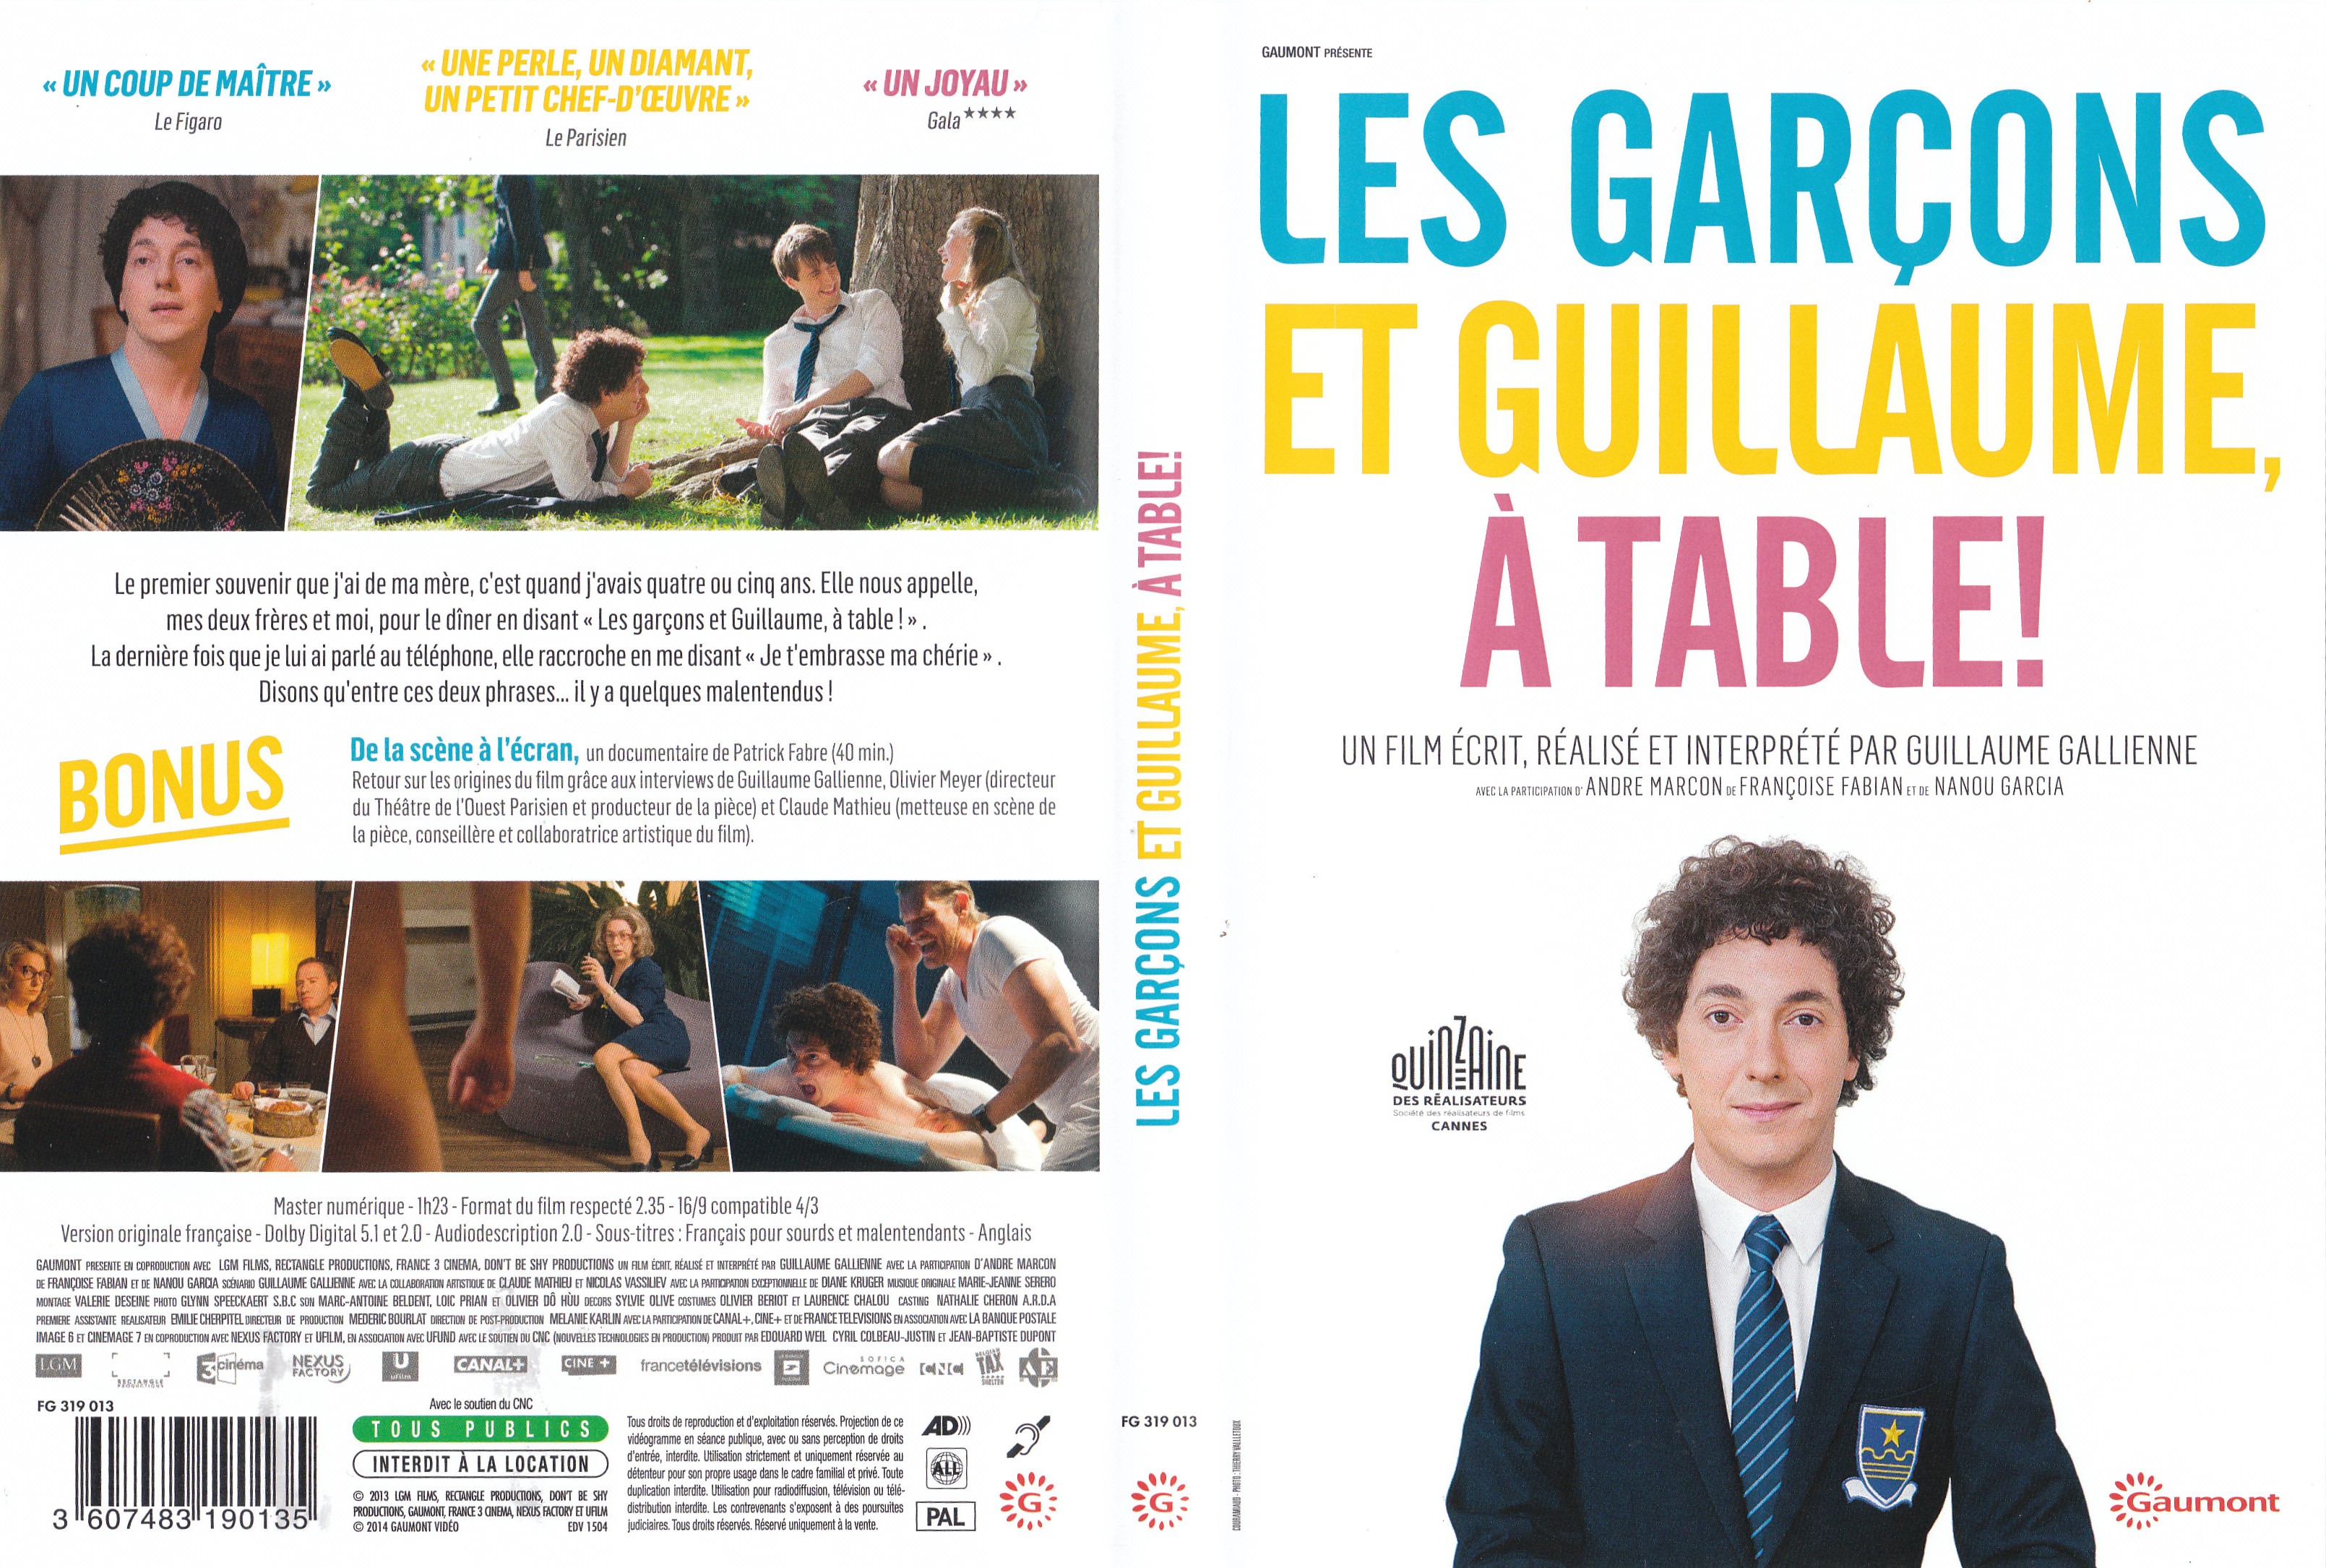 Jaquette DVD Les Garons et Guillaume,  table !